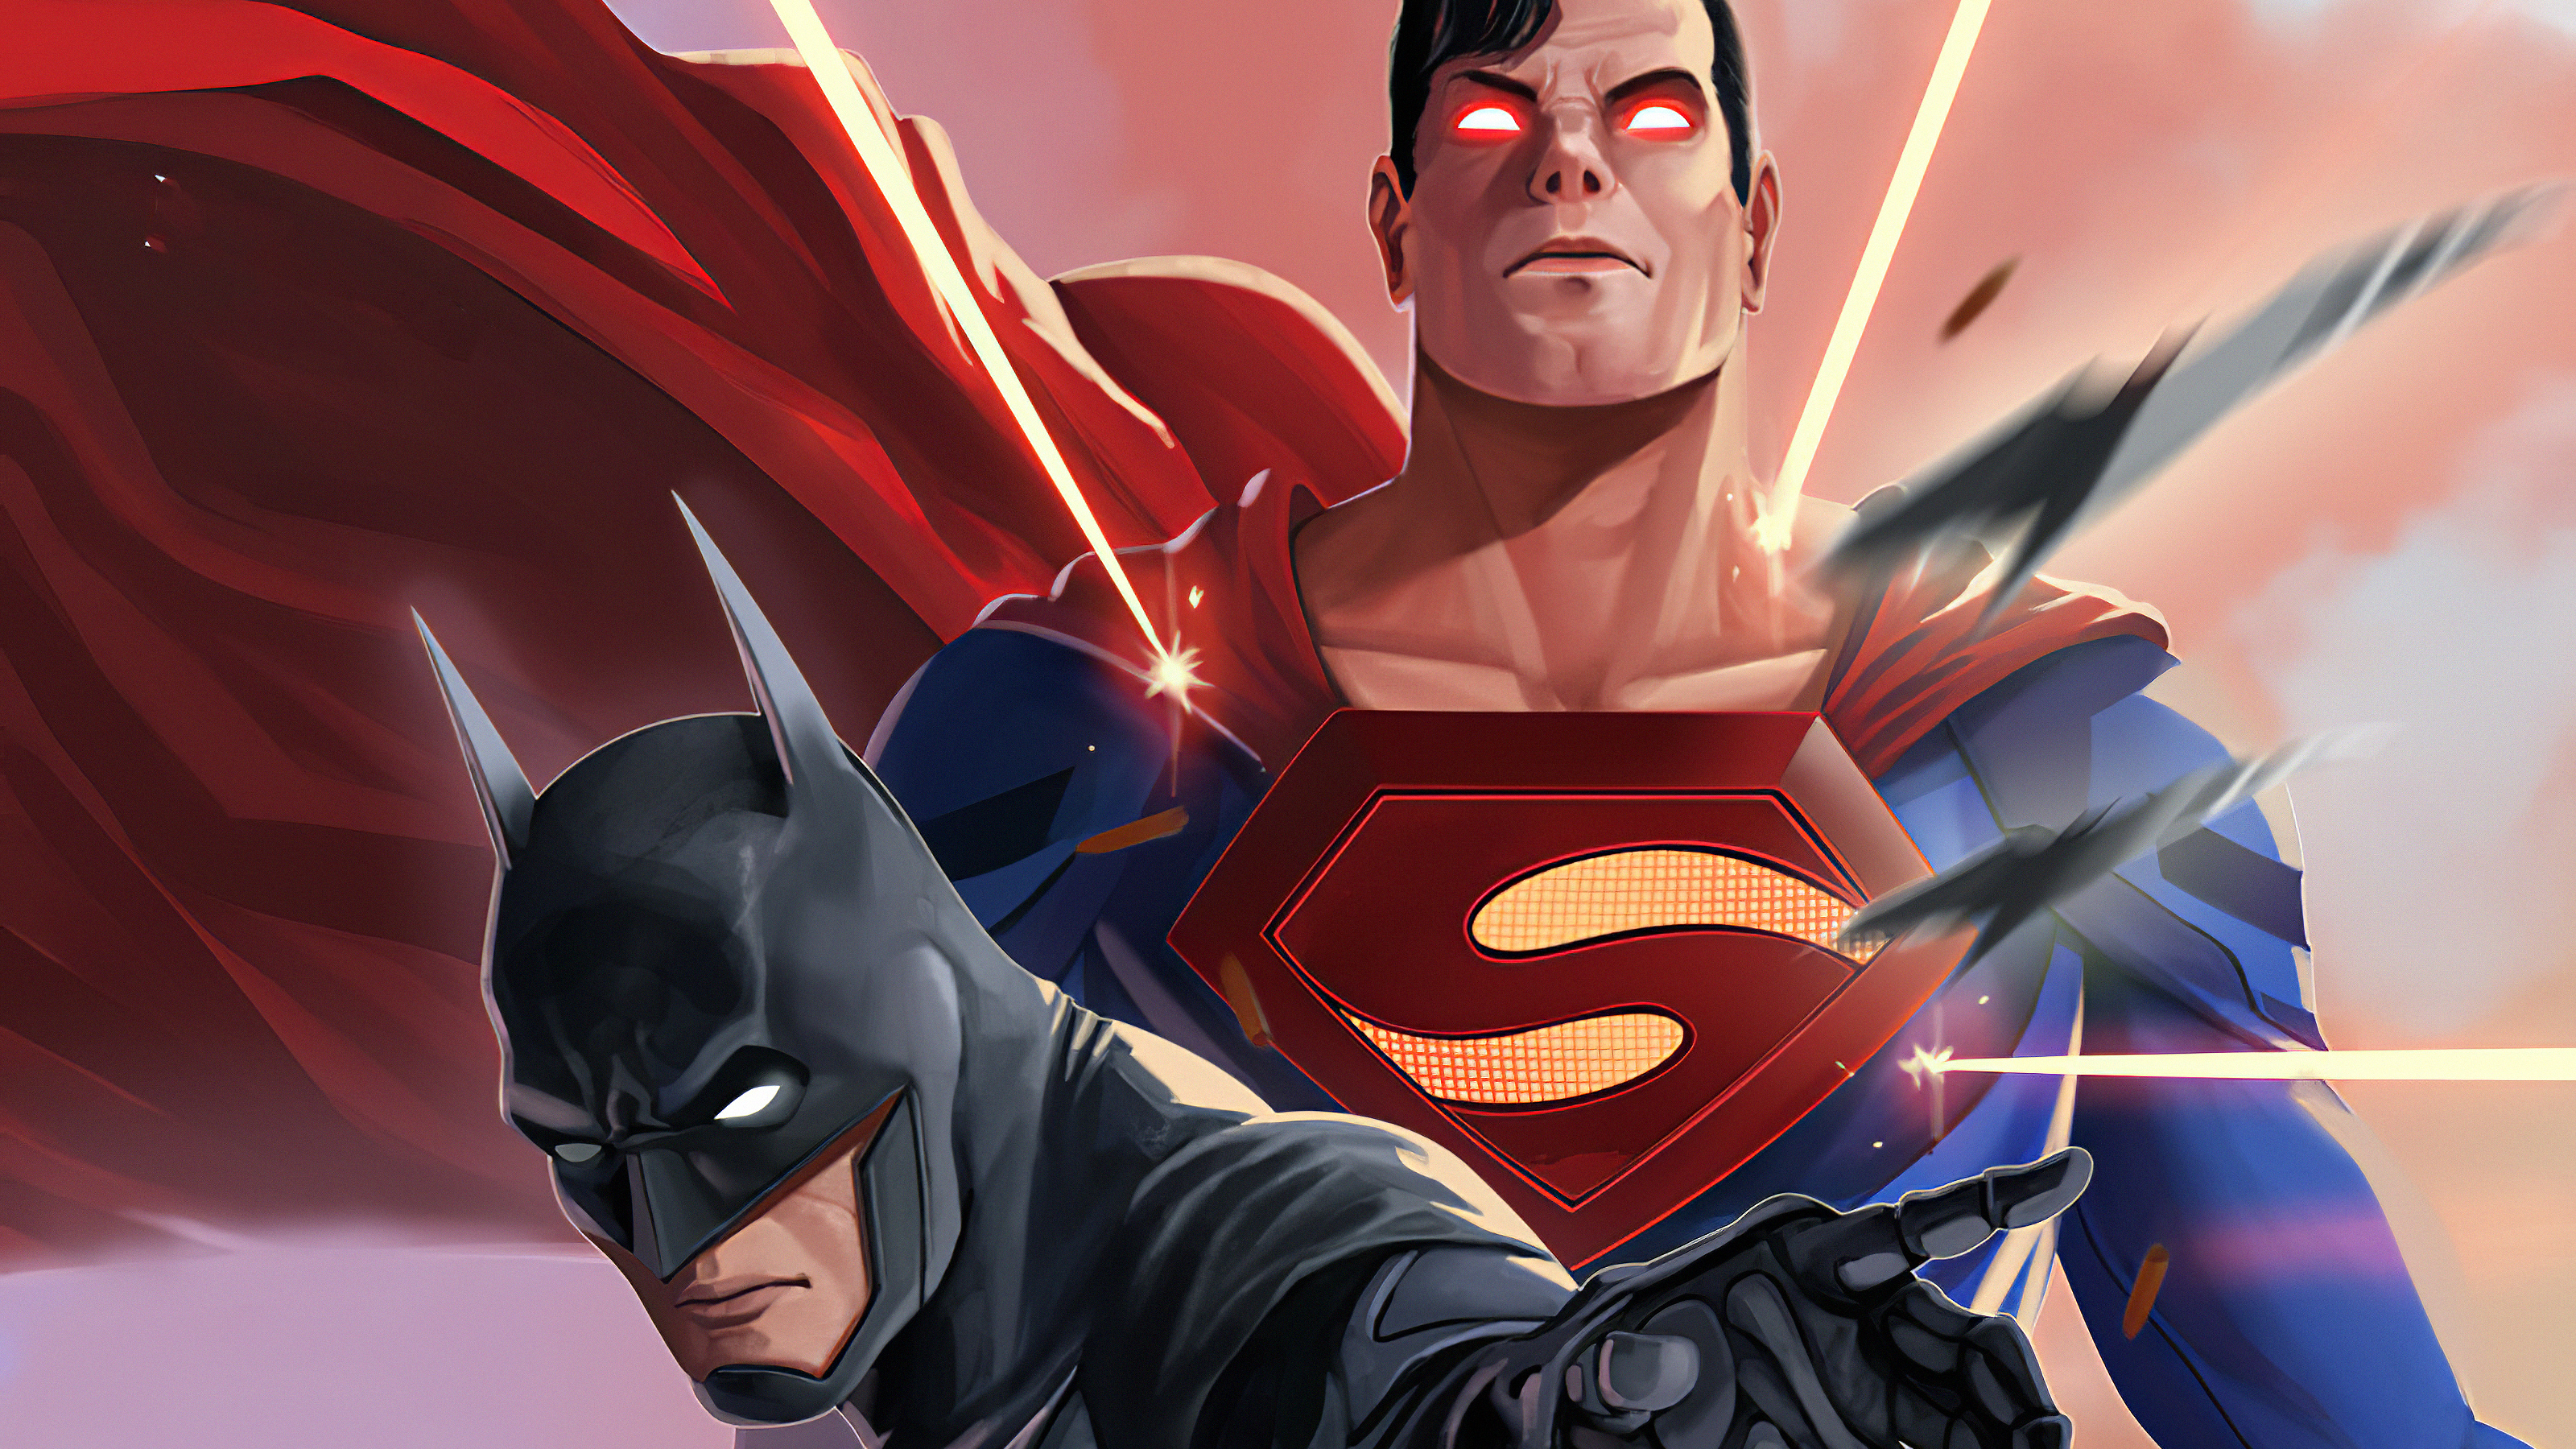 Batman Dc Comics Justice League Superman 3200x1800